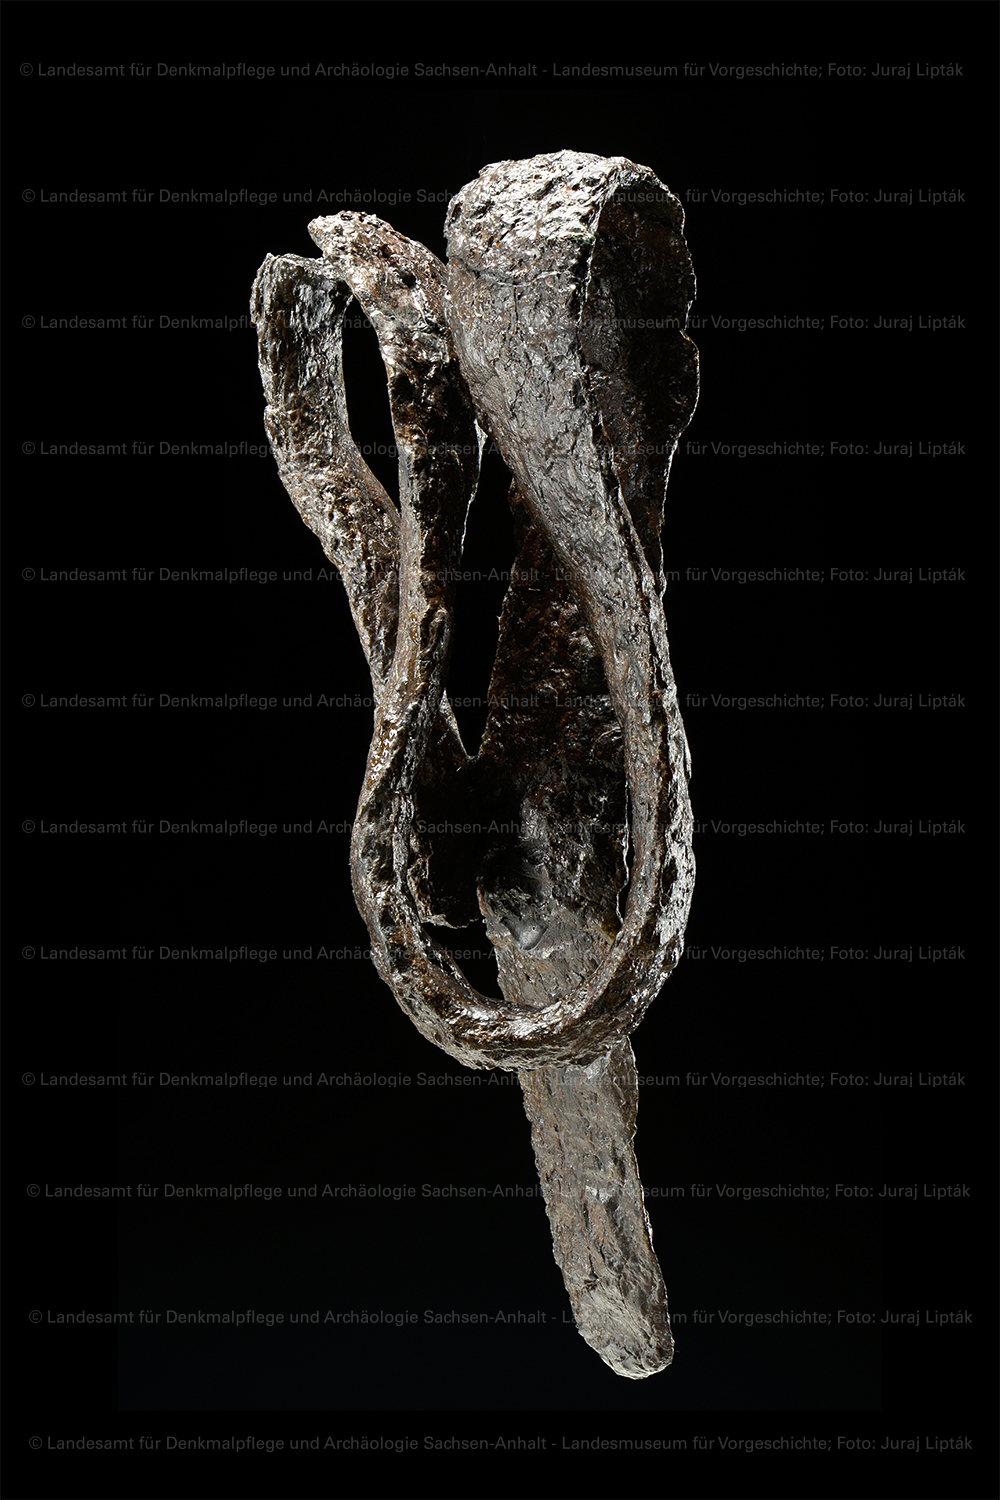 Zweischneidiges Eisenschwert aus Grab 44 von Schkopau, Saalekreis (Landesamt für Denkmalpflege und Archäologie Sachsen-Anhalt - Landesmuseum für Vorgeschichte RR-F)